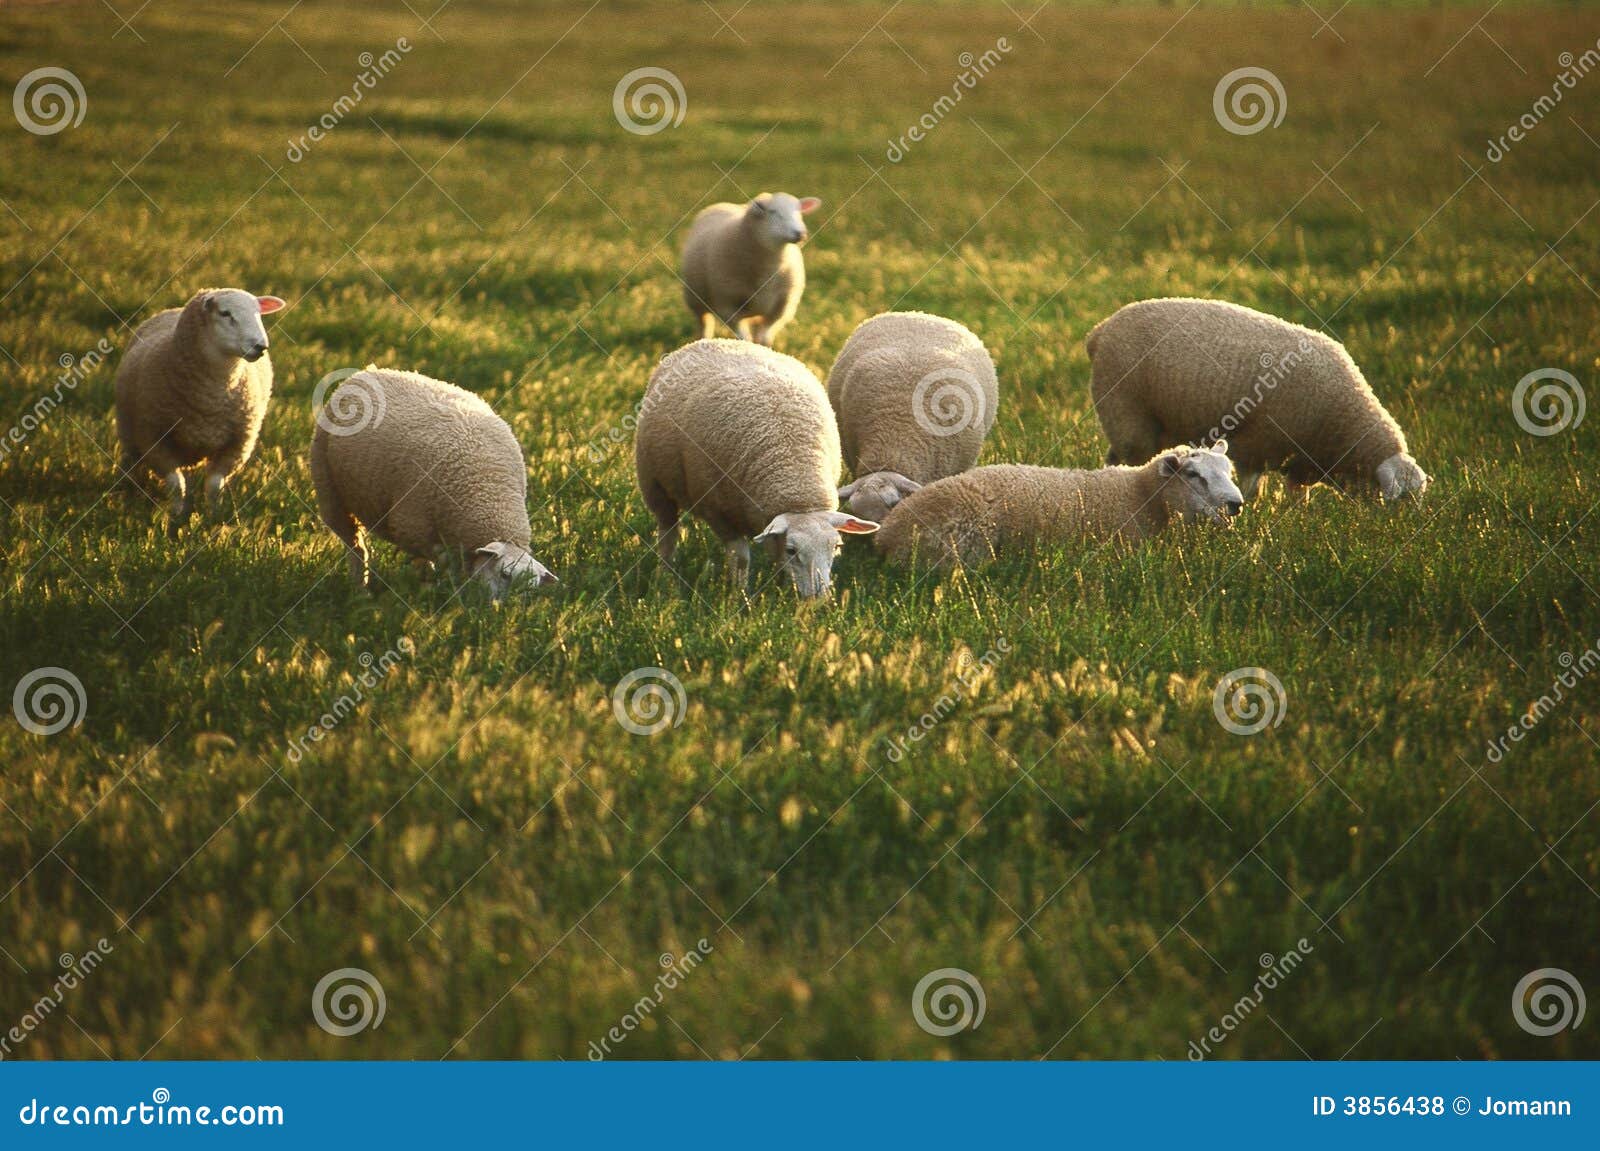 grazing sheep.